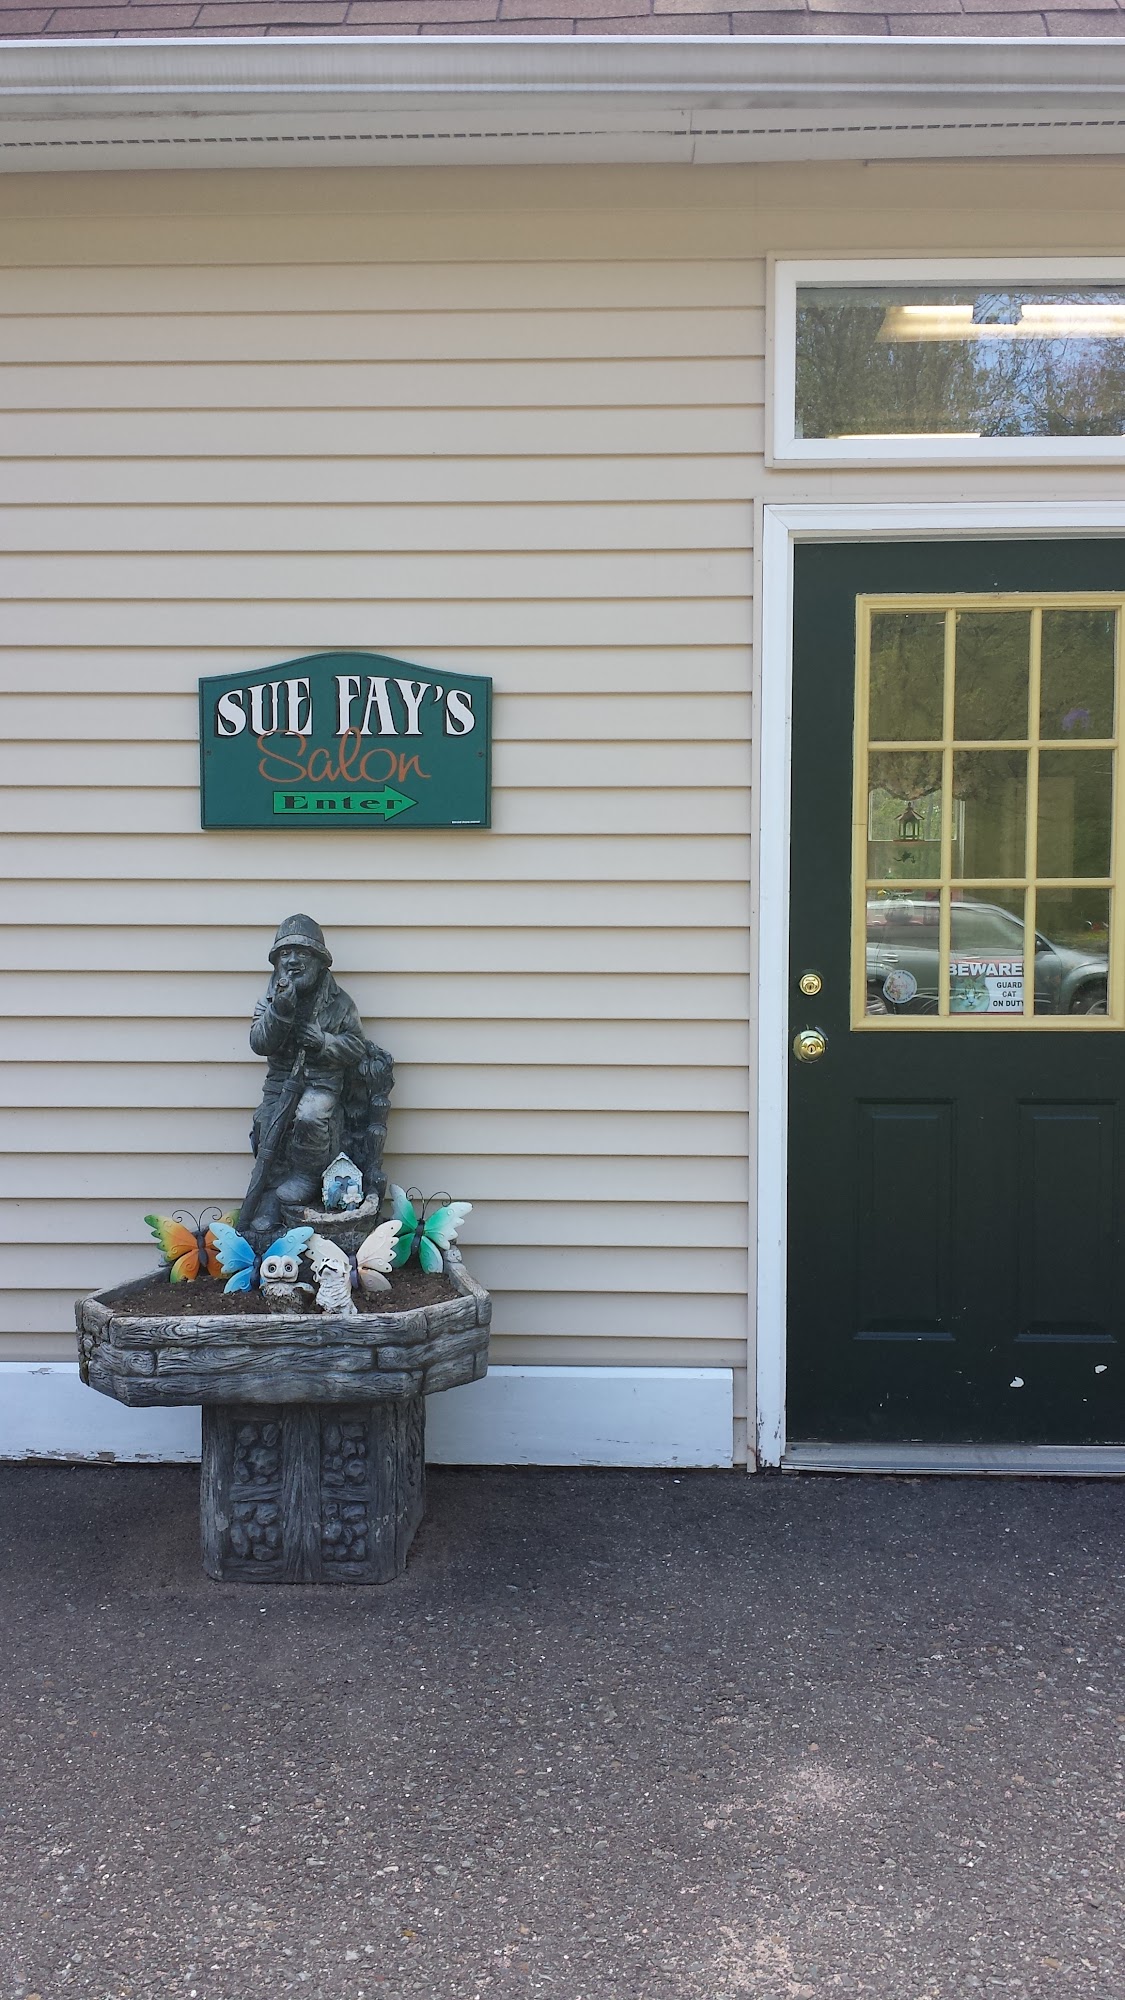 Sue Fay's Full Services Family Sln 44 Stebbins St, Belchertown Massachusetts 01007